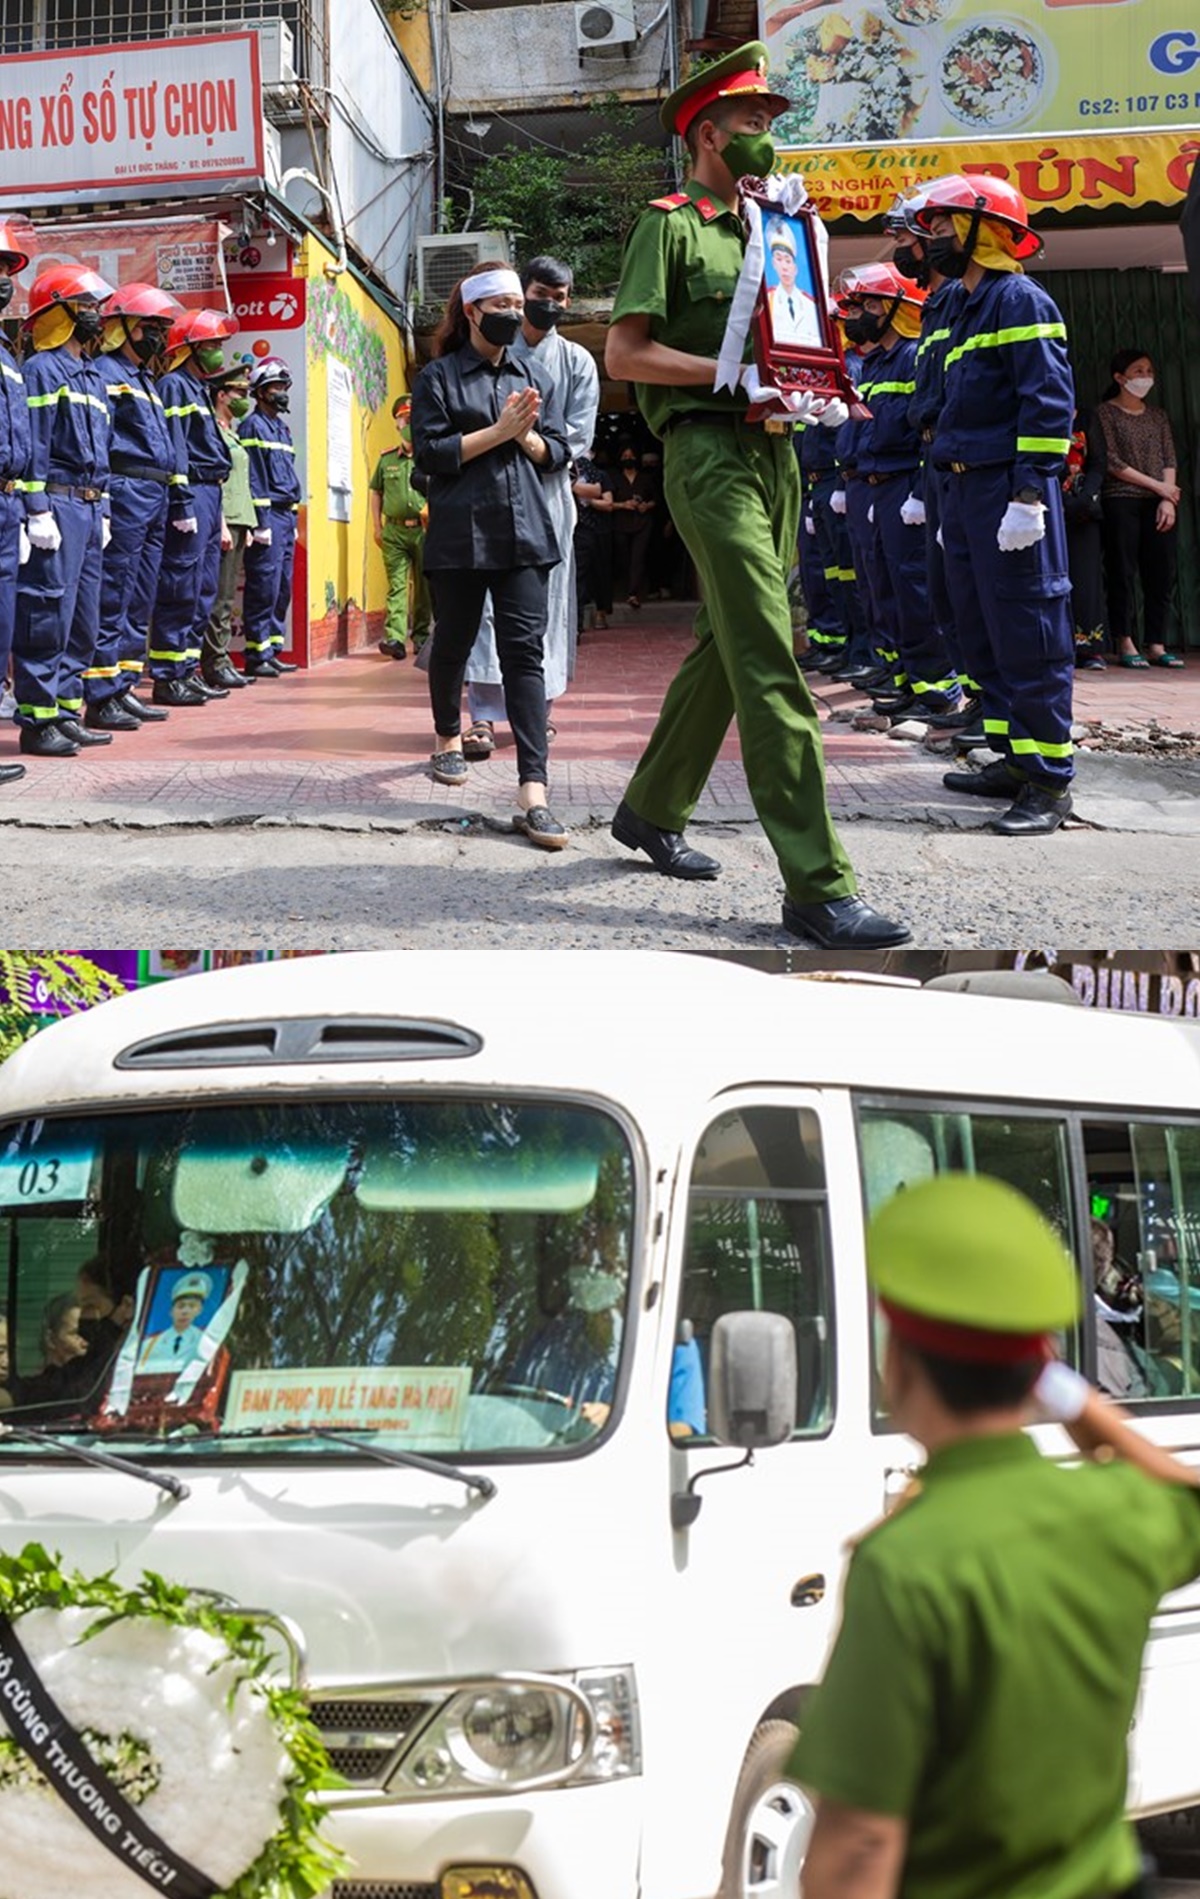 Toàn cảnh tang lễ 3 cảnh sát PCCC: Mẹ ngất lịm bên linh cữu, người dân chắp tay thành kính, đồng đội 'dằn lòng' 8